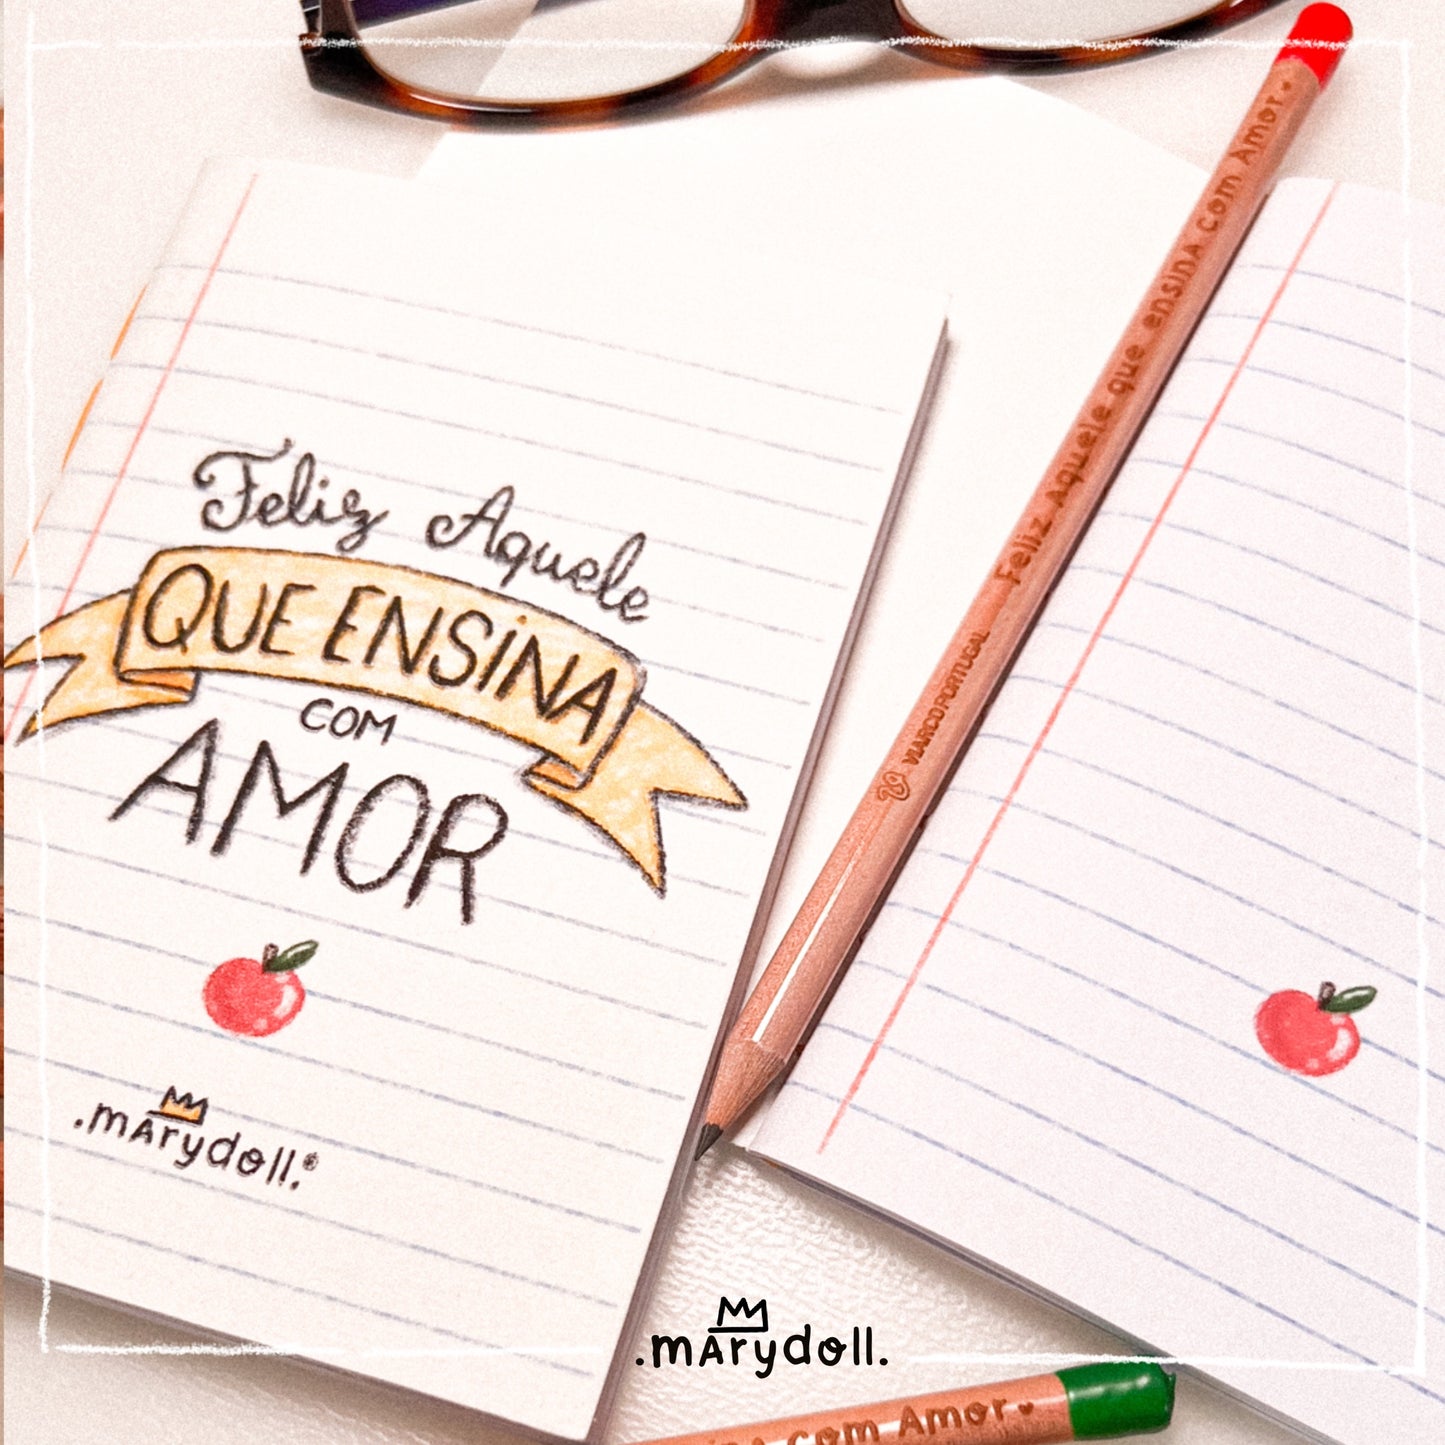 Caderno + lápis  | Feliz aquele que ensina com Amor